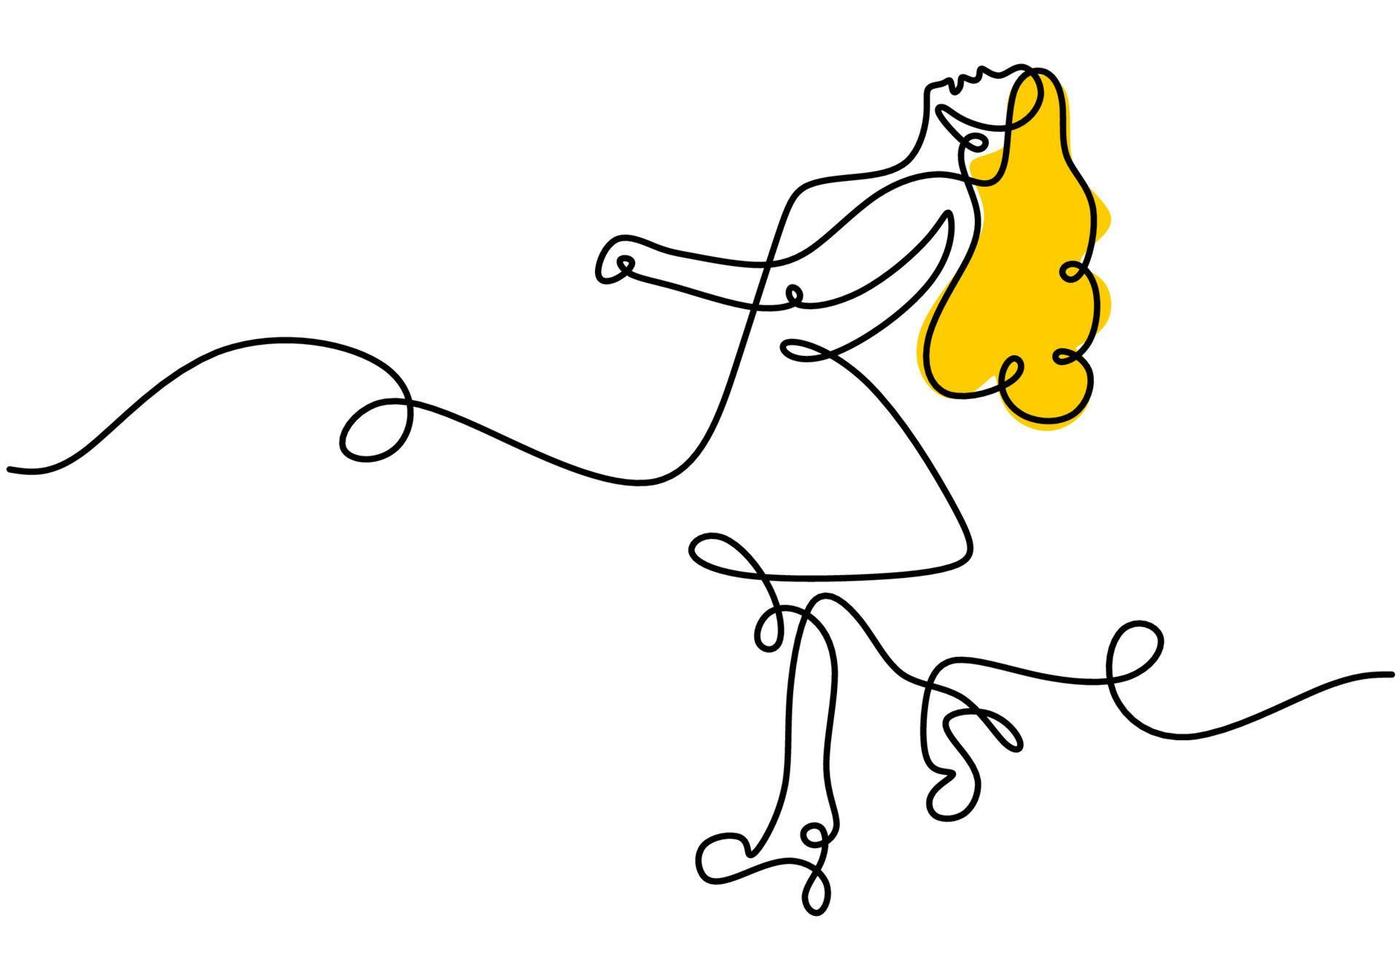 doorlopende enkele lijntekening van een lange gele haarvrouw die op straat loopt. vrouw make-up thema één regel geïsoleerd op een witte achtergrond. vector